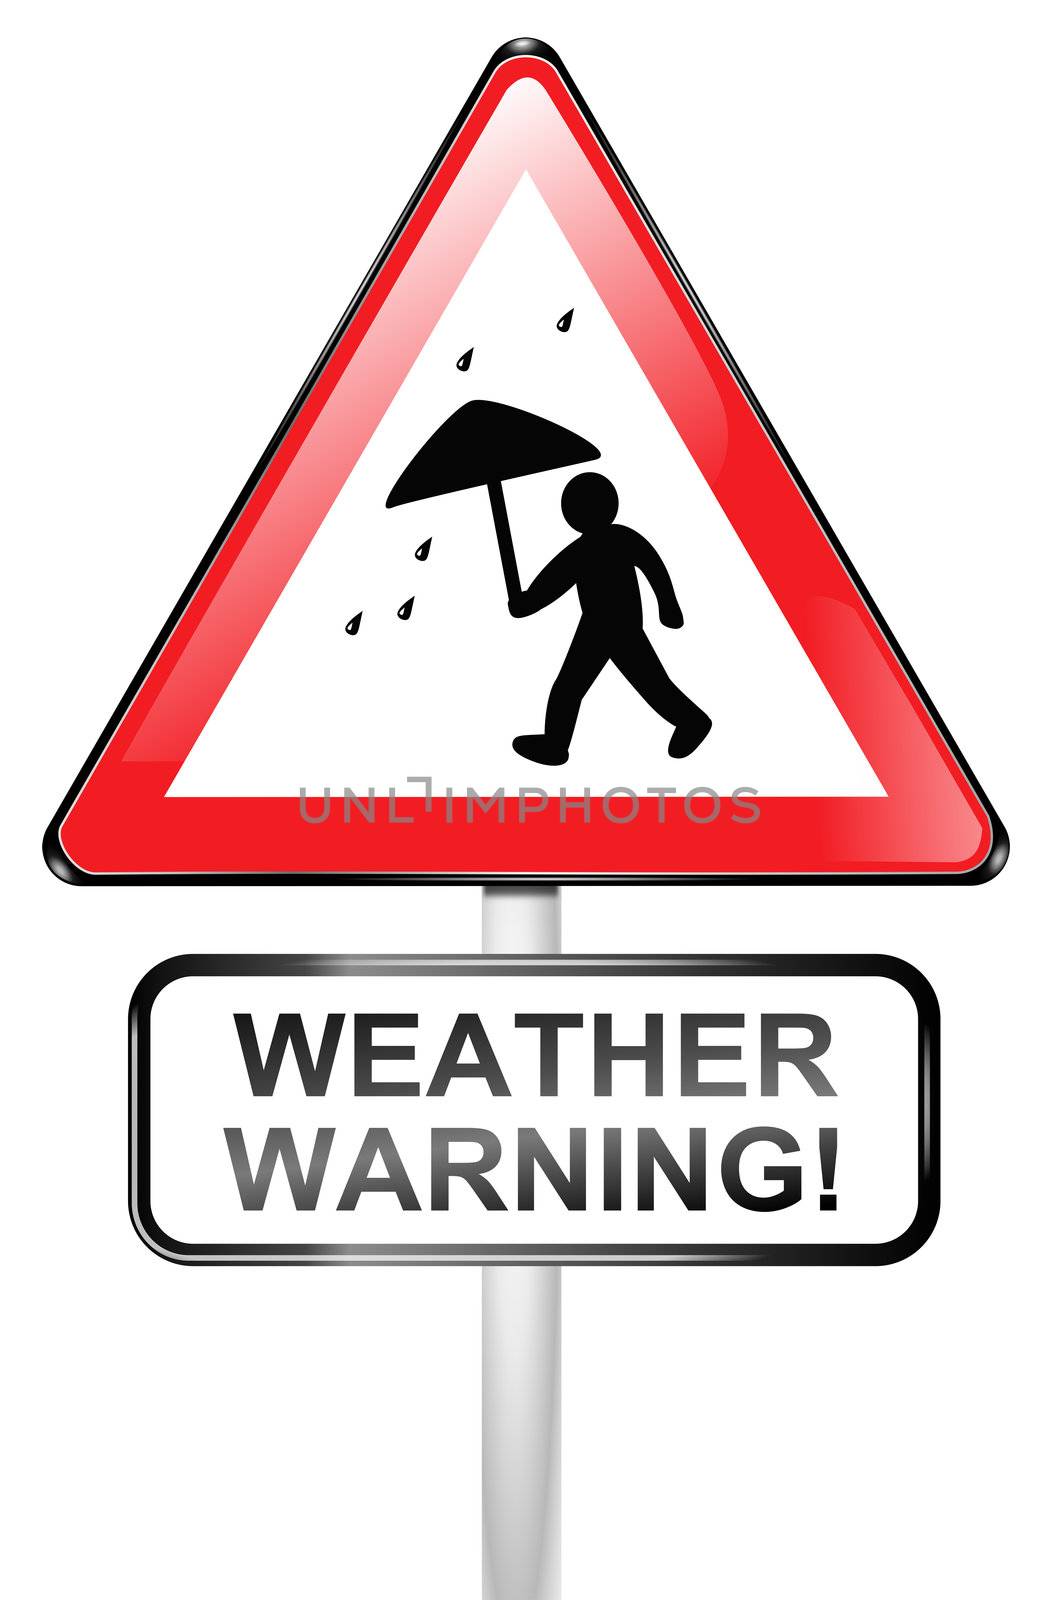 Illustrated red triangular hazard warning sign depicting rainy weather. White background